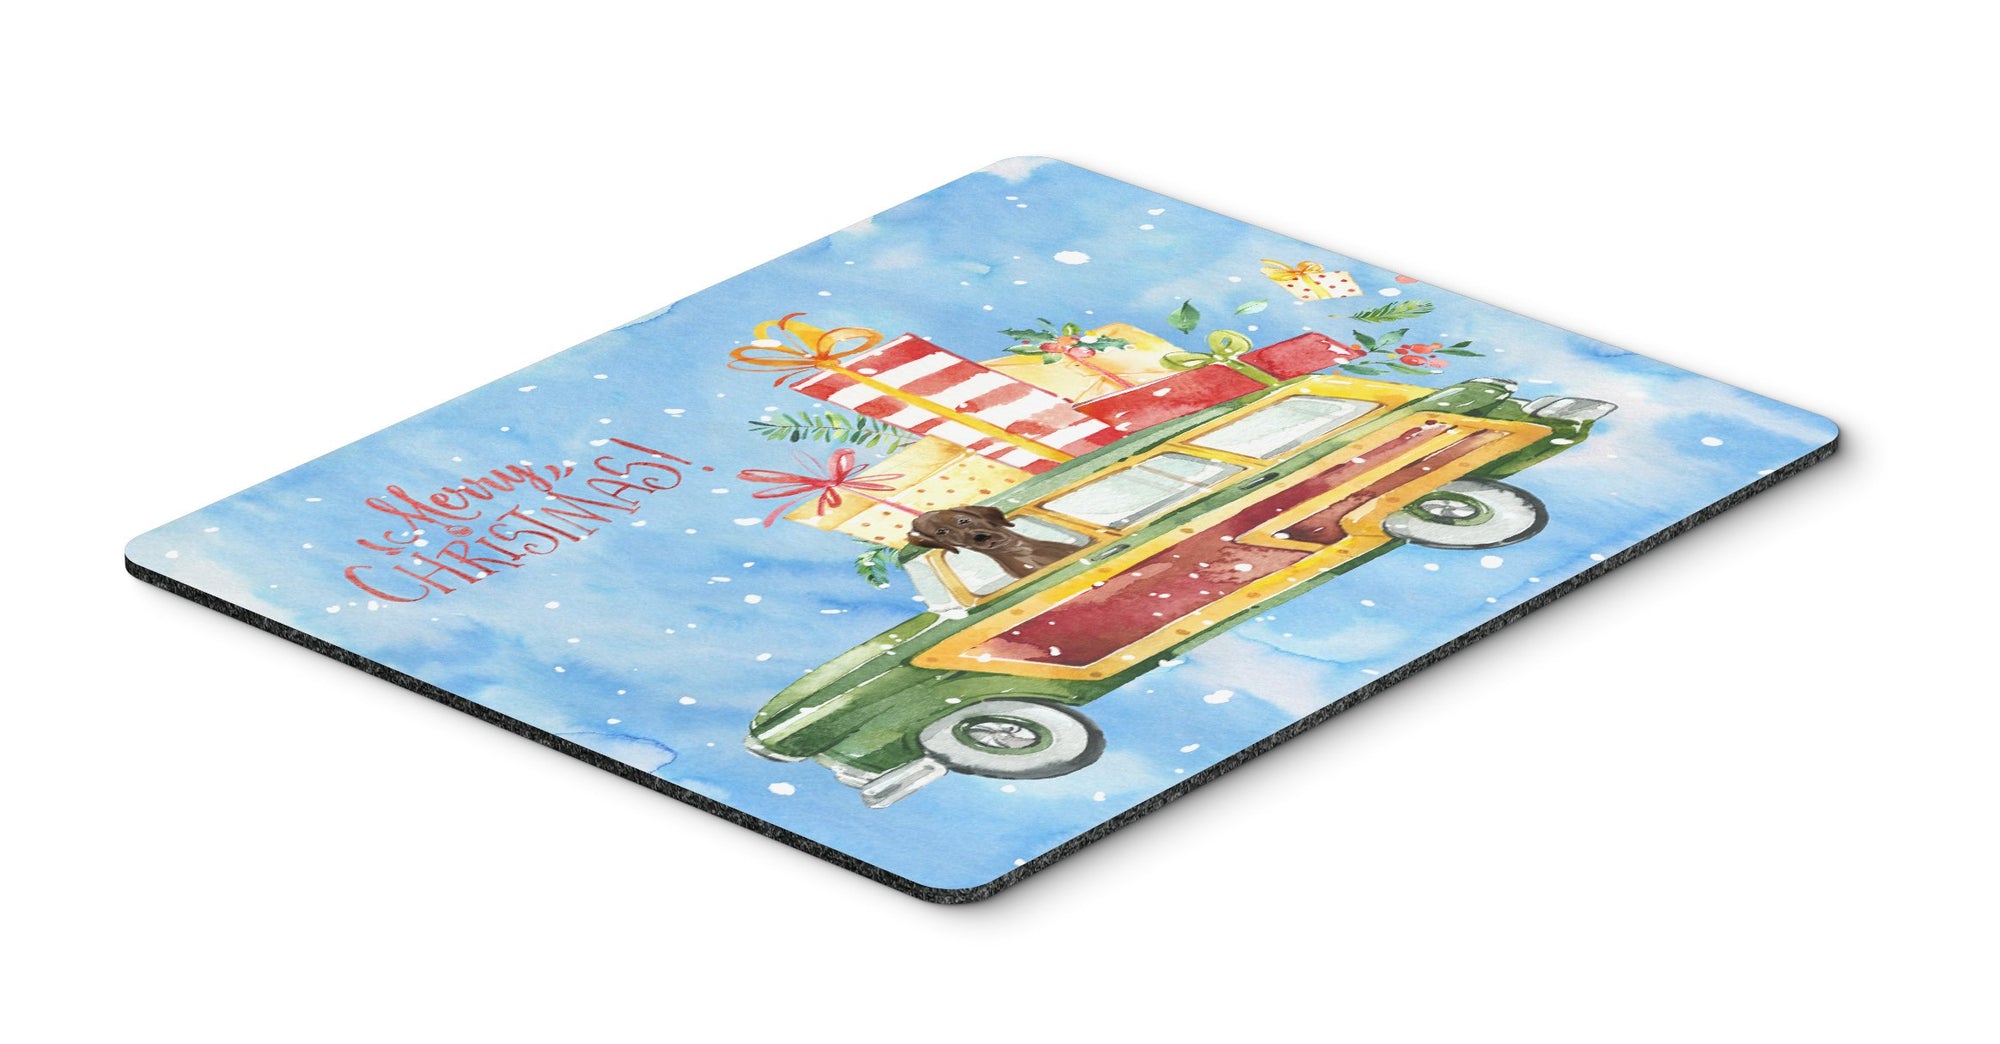 Merry Christmas Chocolate Labrador Retriever Mouse Pad, Hot Pad or Trivet CK2437MP by Caroline's Treasures